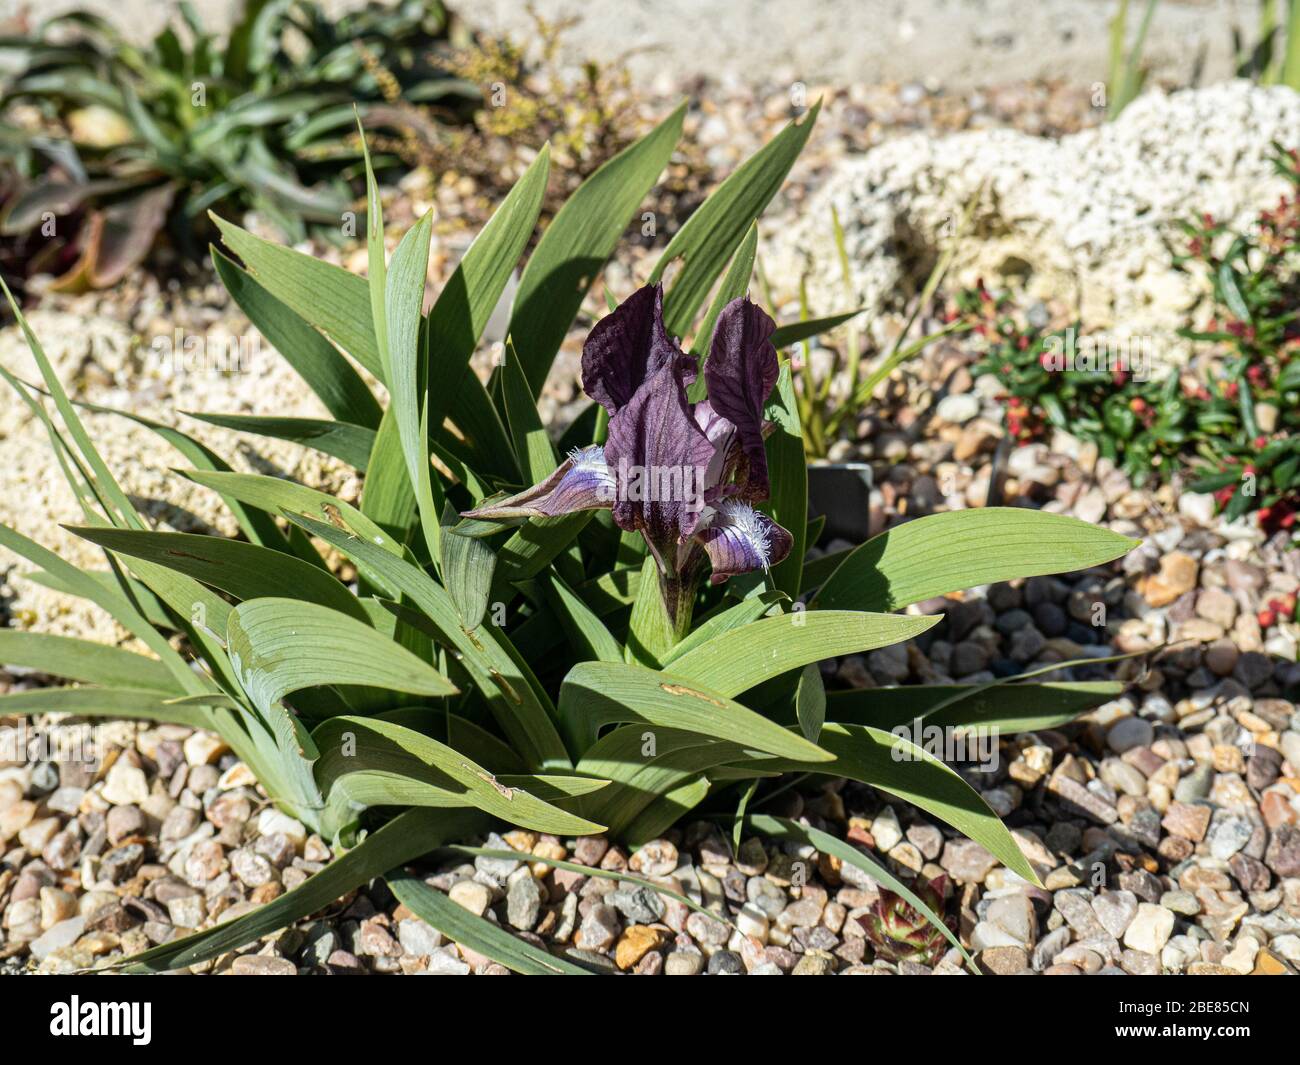 L'iris miniature violet profond, Iris suaveolens fleurit dans un jardin de puits Banque D'Images